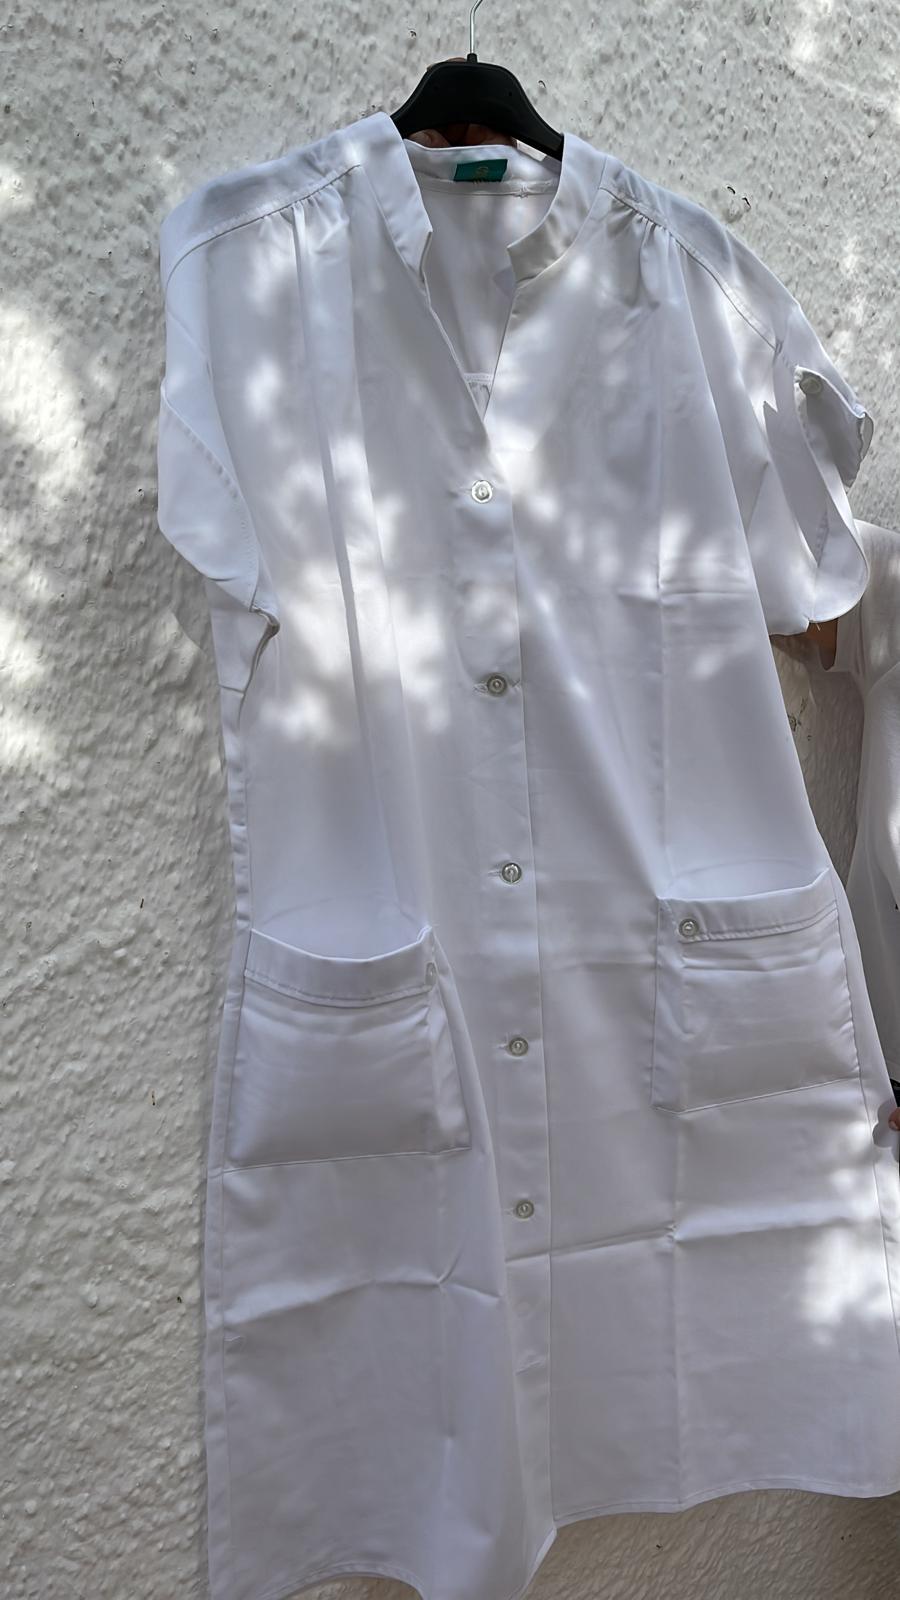 Lote 65 - bata branca manga curta tamanho 42 - 8€